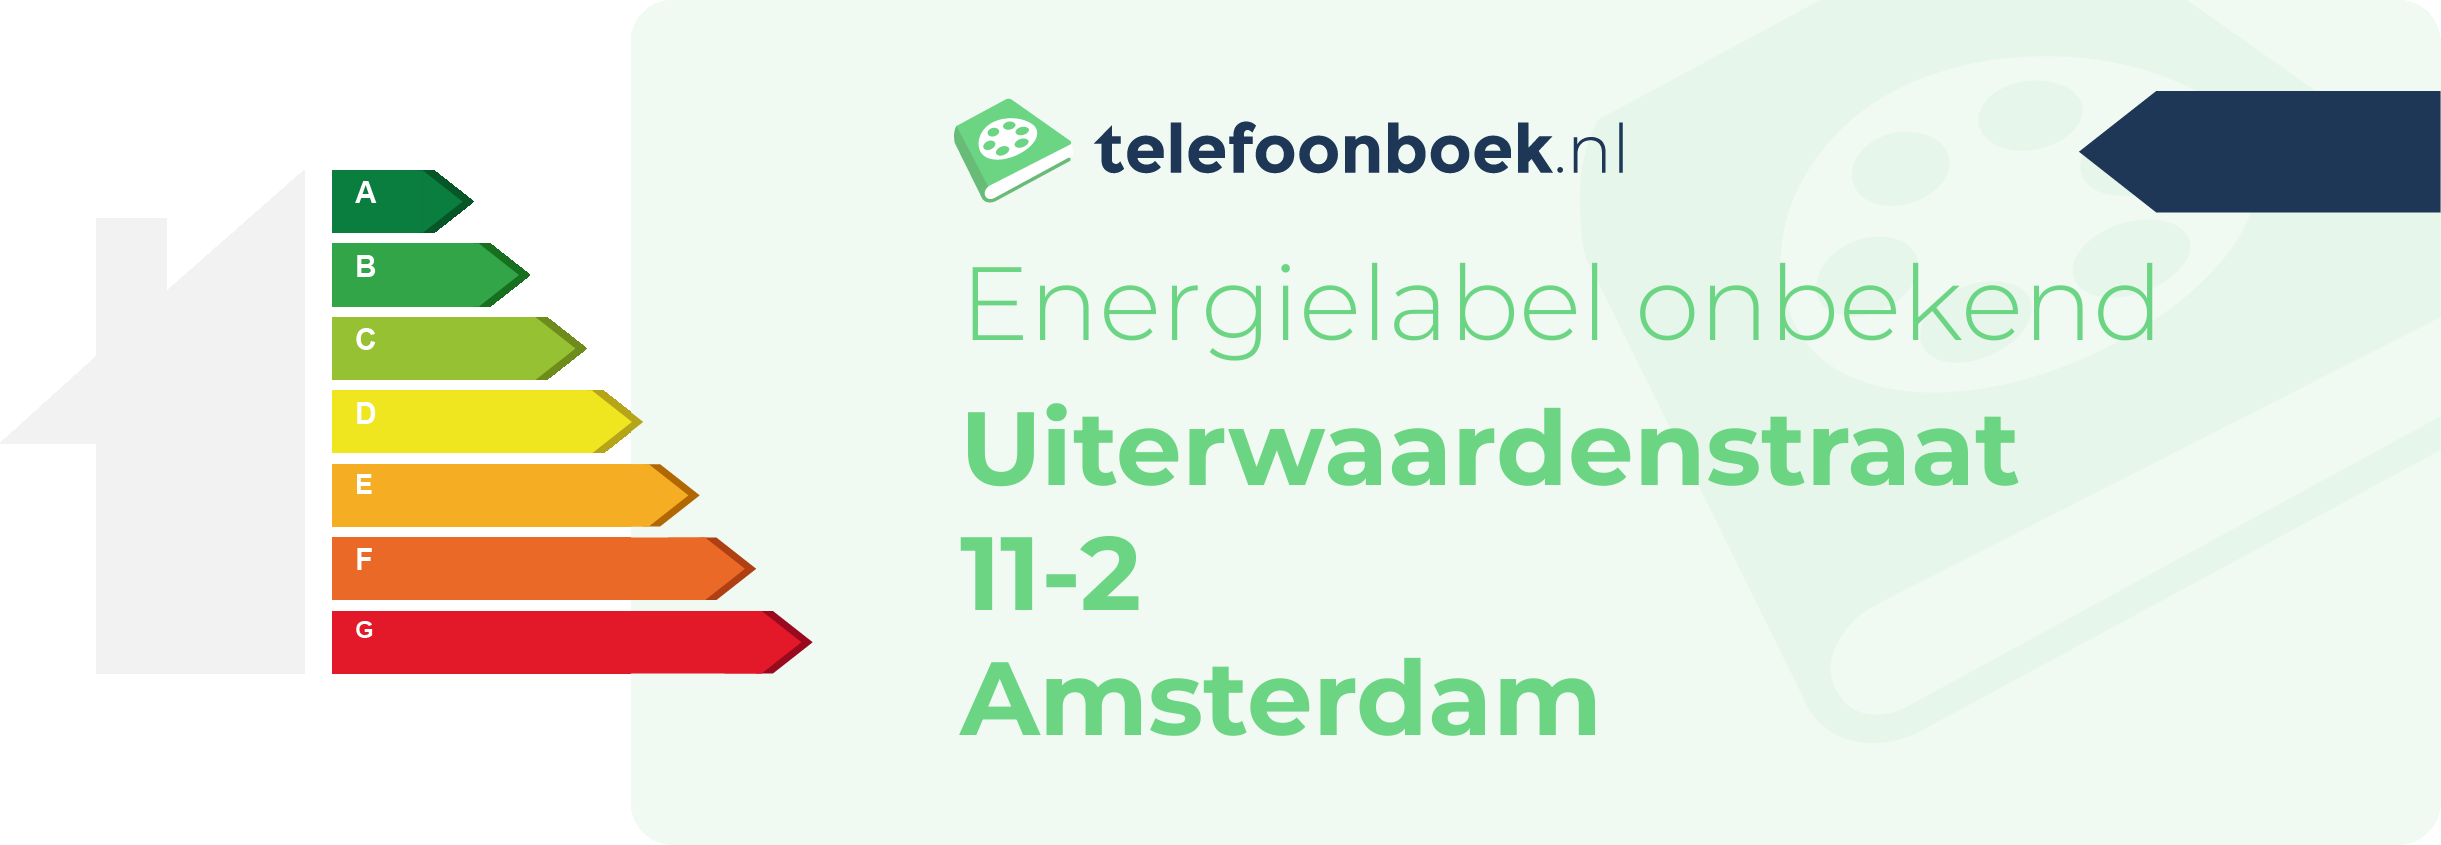 Energielabel Uiterwaardenstraat 11-2 Amsterdam